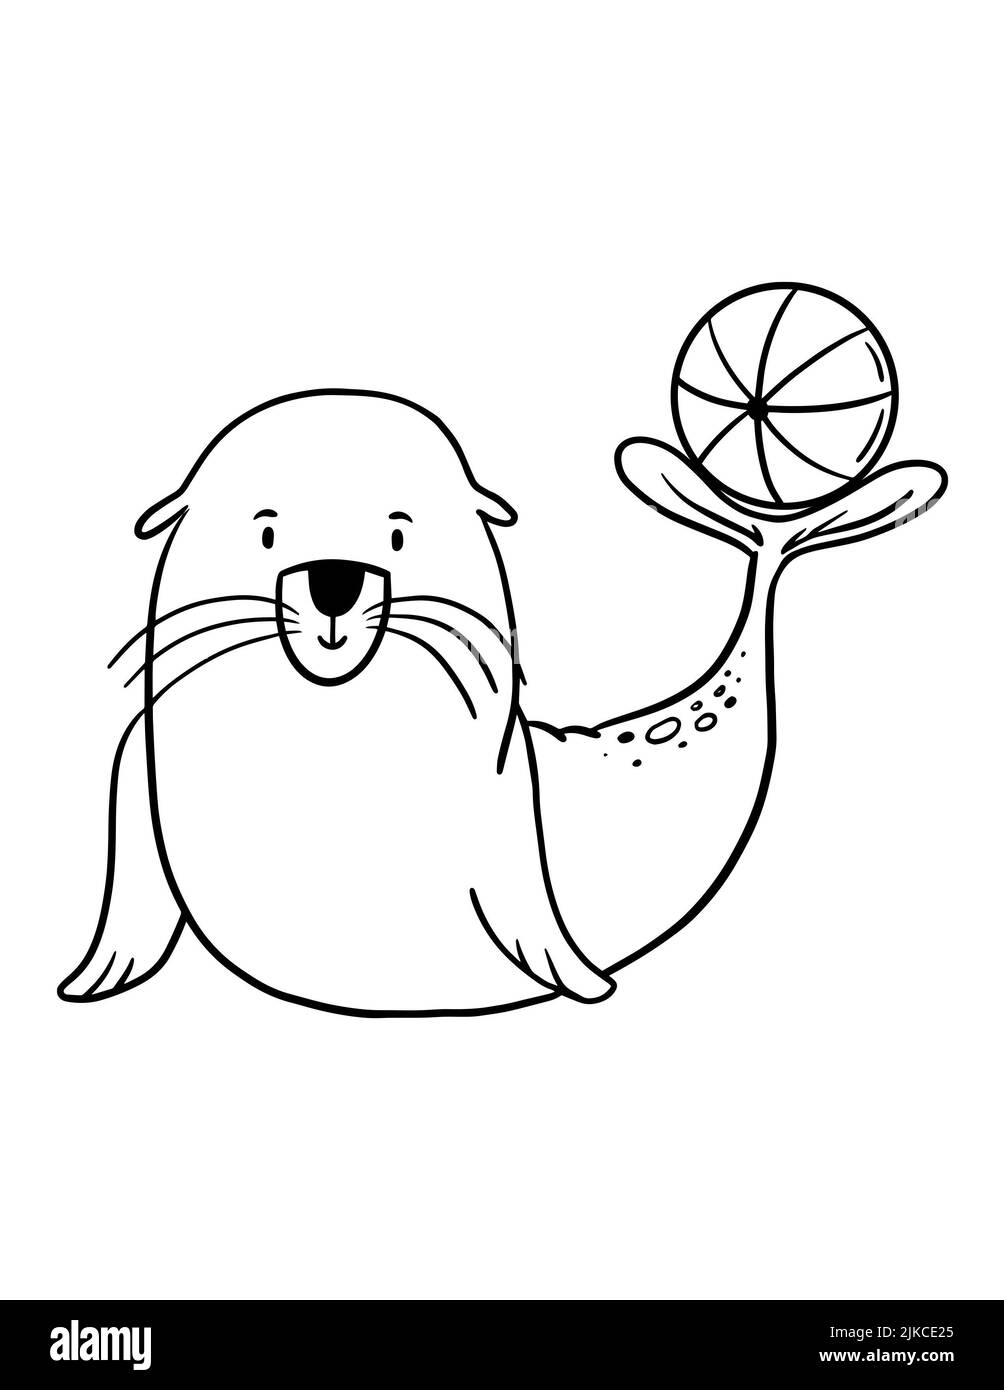 Page de coloriage des phoques à fourrure pour enfants. Illustration simple d'un animal marin sur fond blanc. Banque D'Images